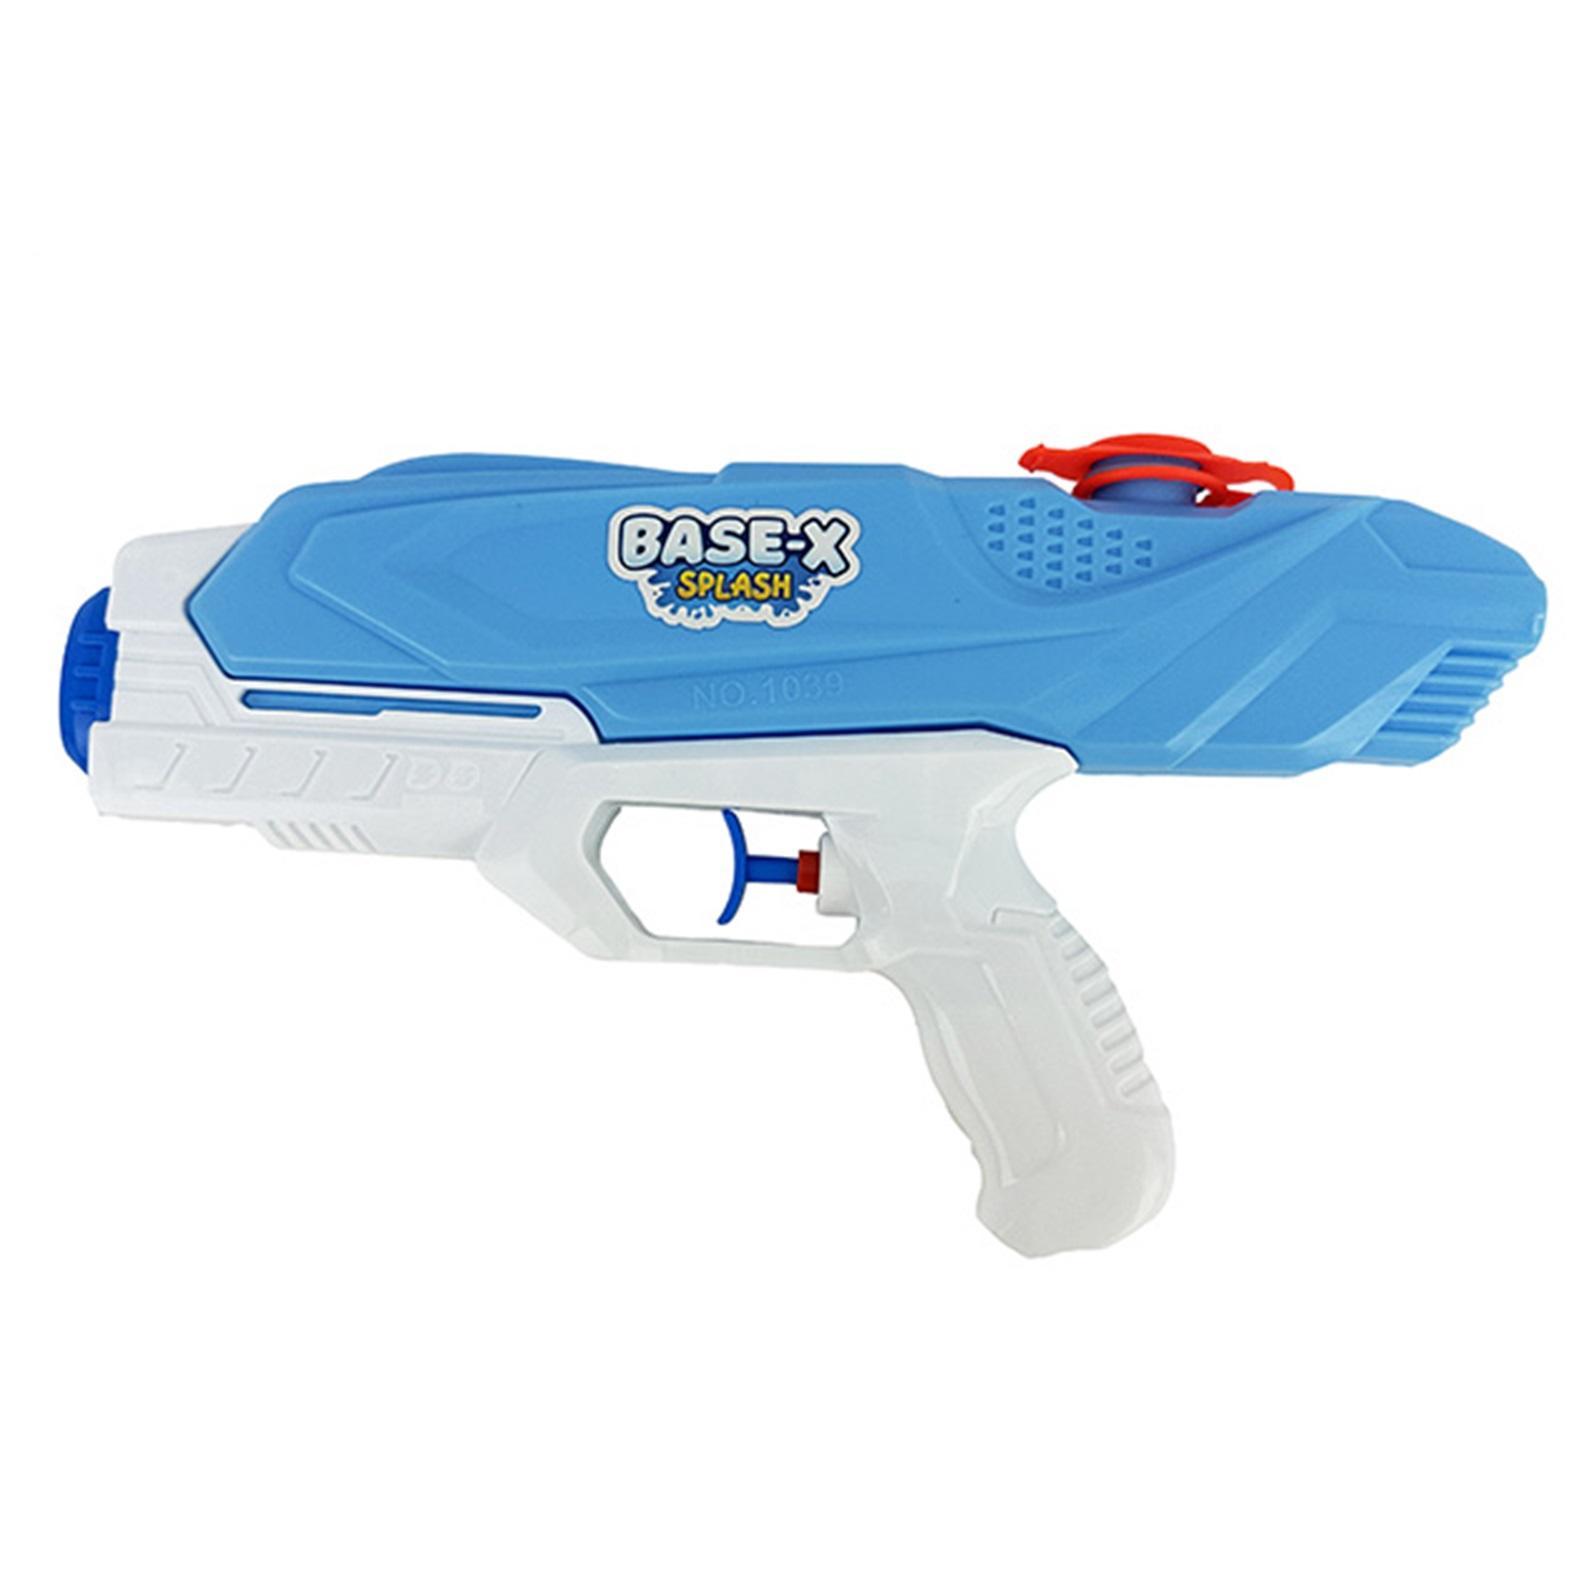 Pistola de agua base-x en bolsa 28 CM 